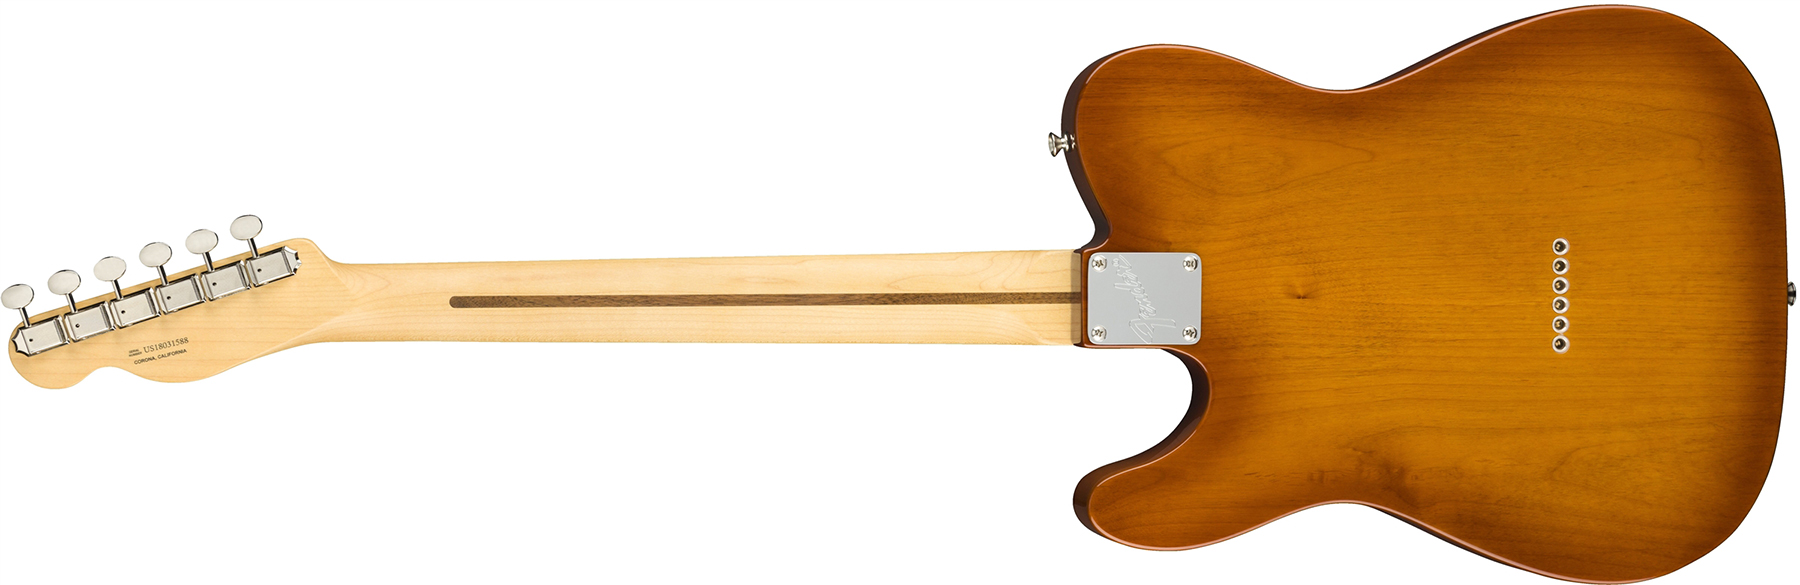 Fender Tele American Performer Usa Rw - Honey Burst - E-Gitarre in Teleform - Variation 1